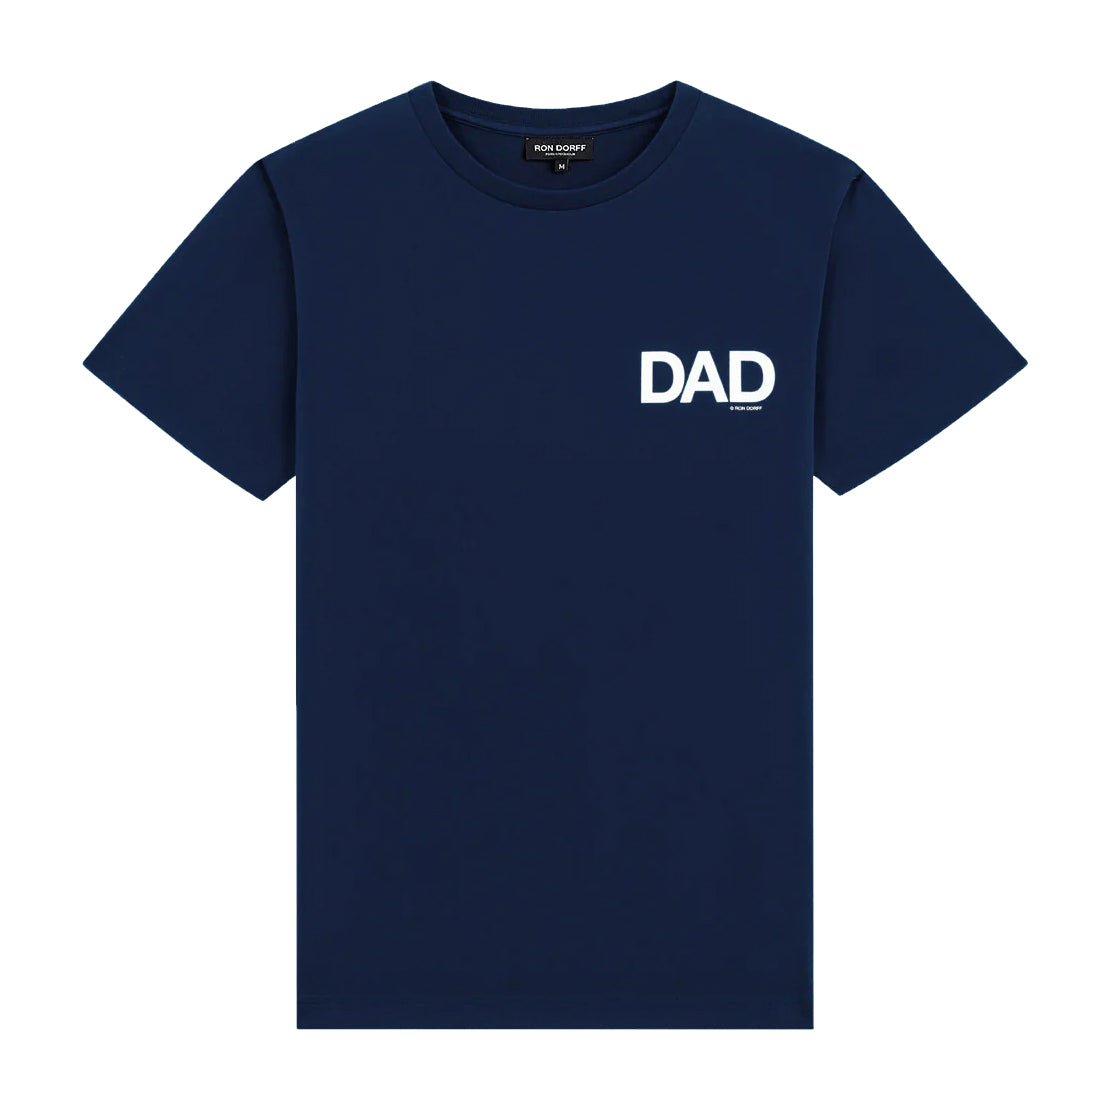 DAD Navy T-Shirt. Ron Dorff